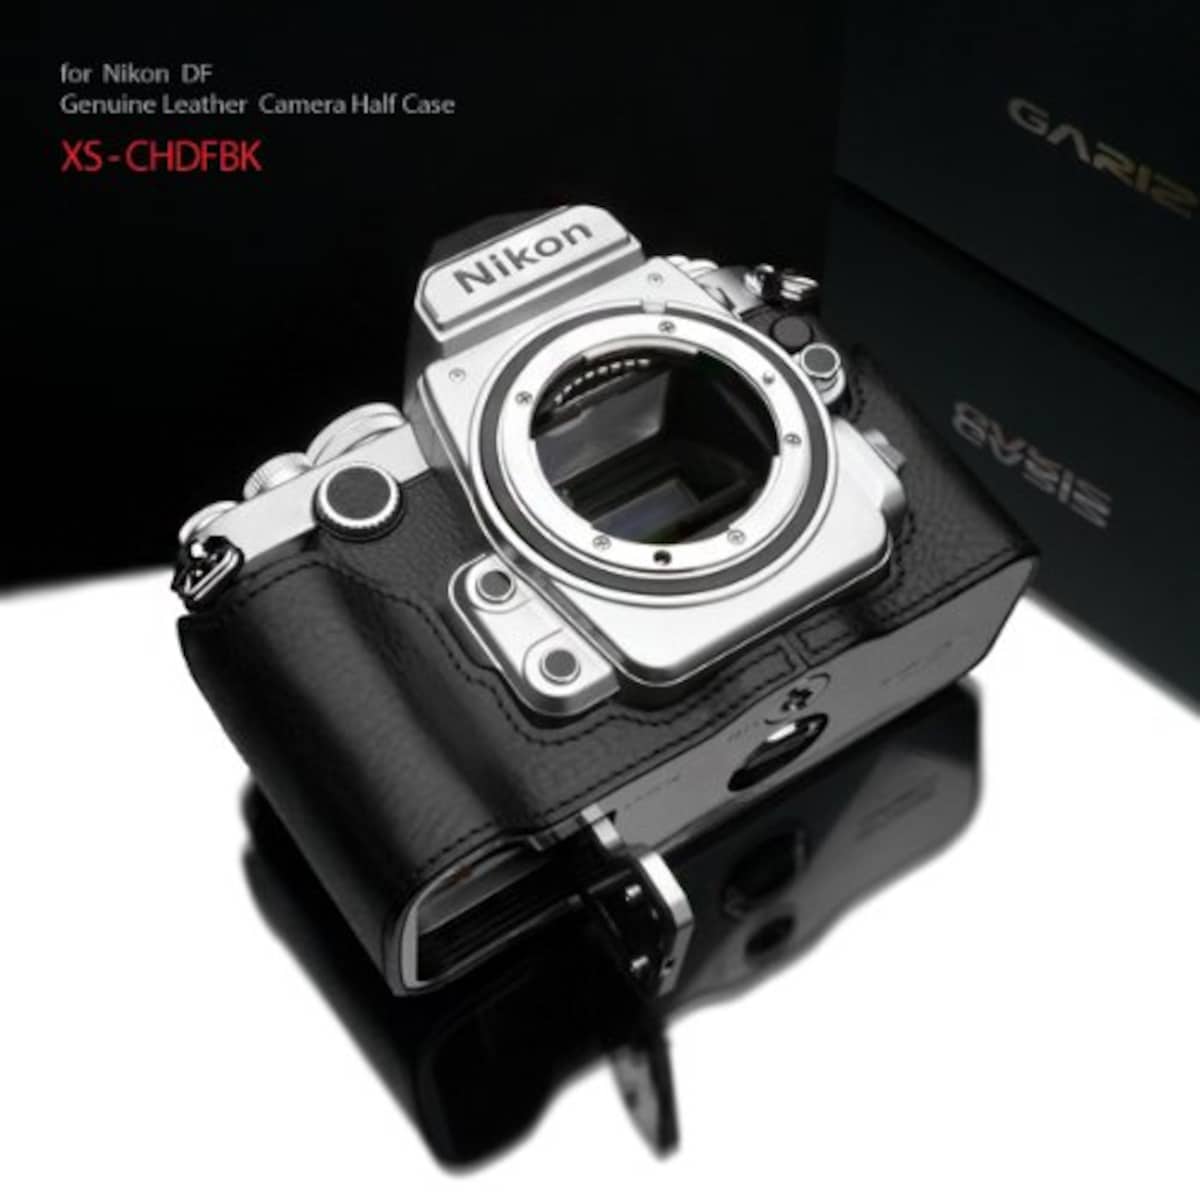  GARIZ Nikon Df用 本革カメラケース Gun Shot Ring付 XS-CHDFBK ブラック画像2 